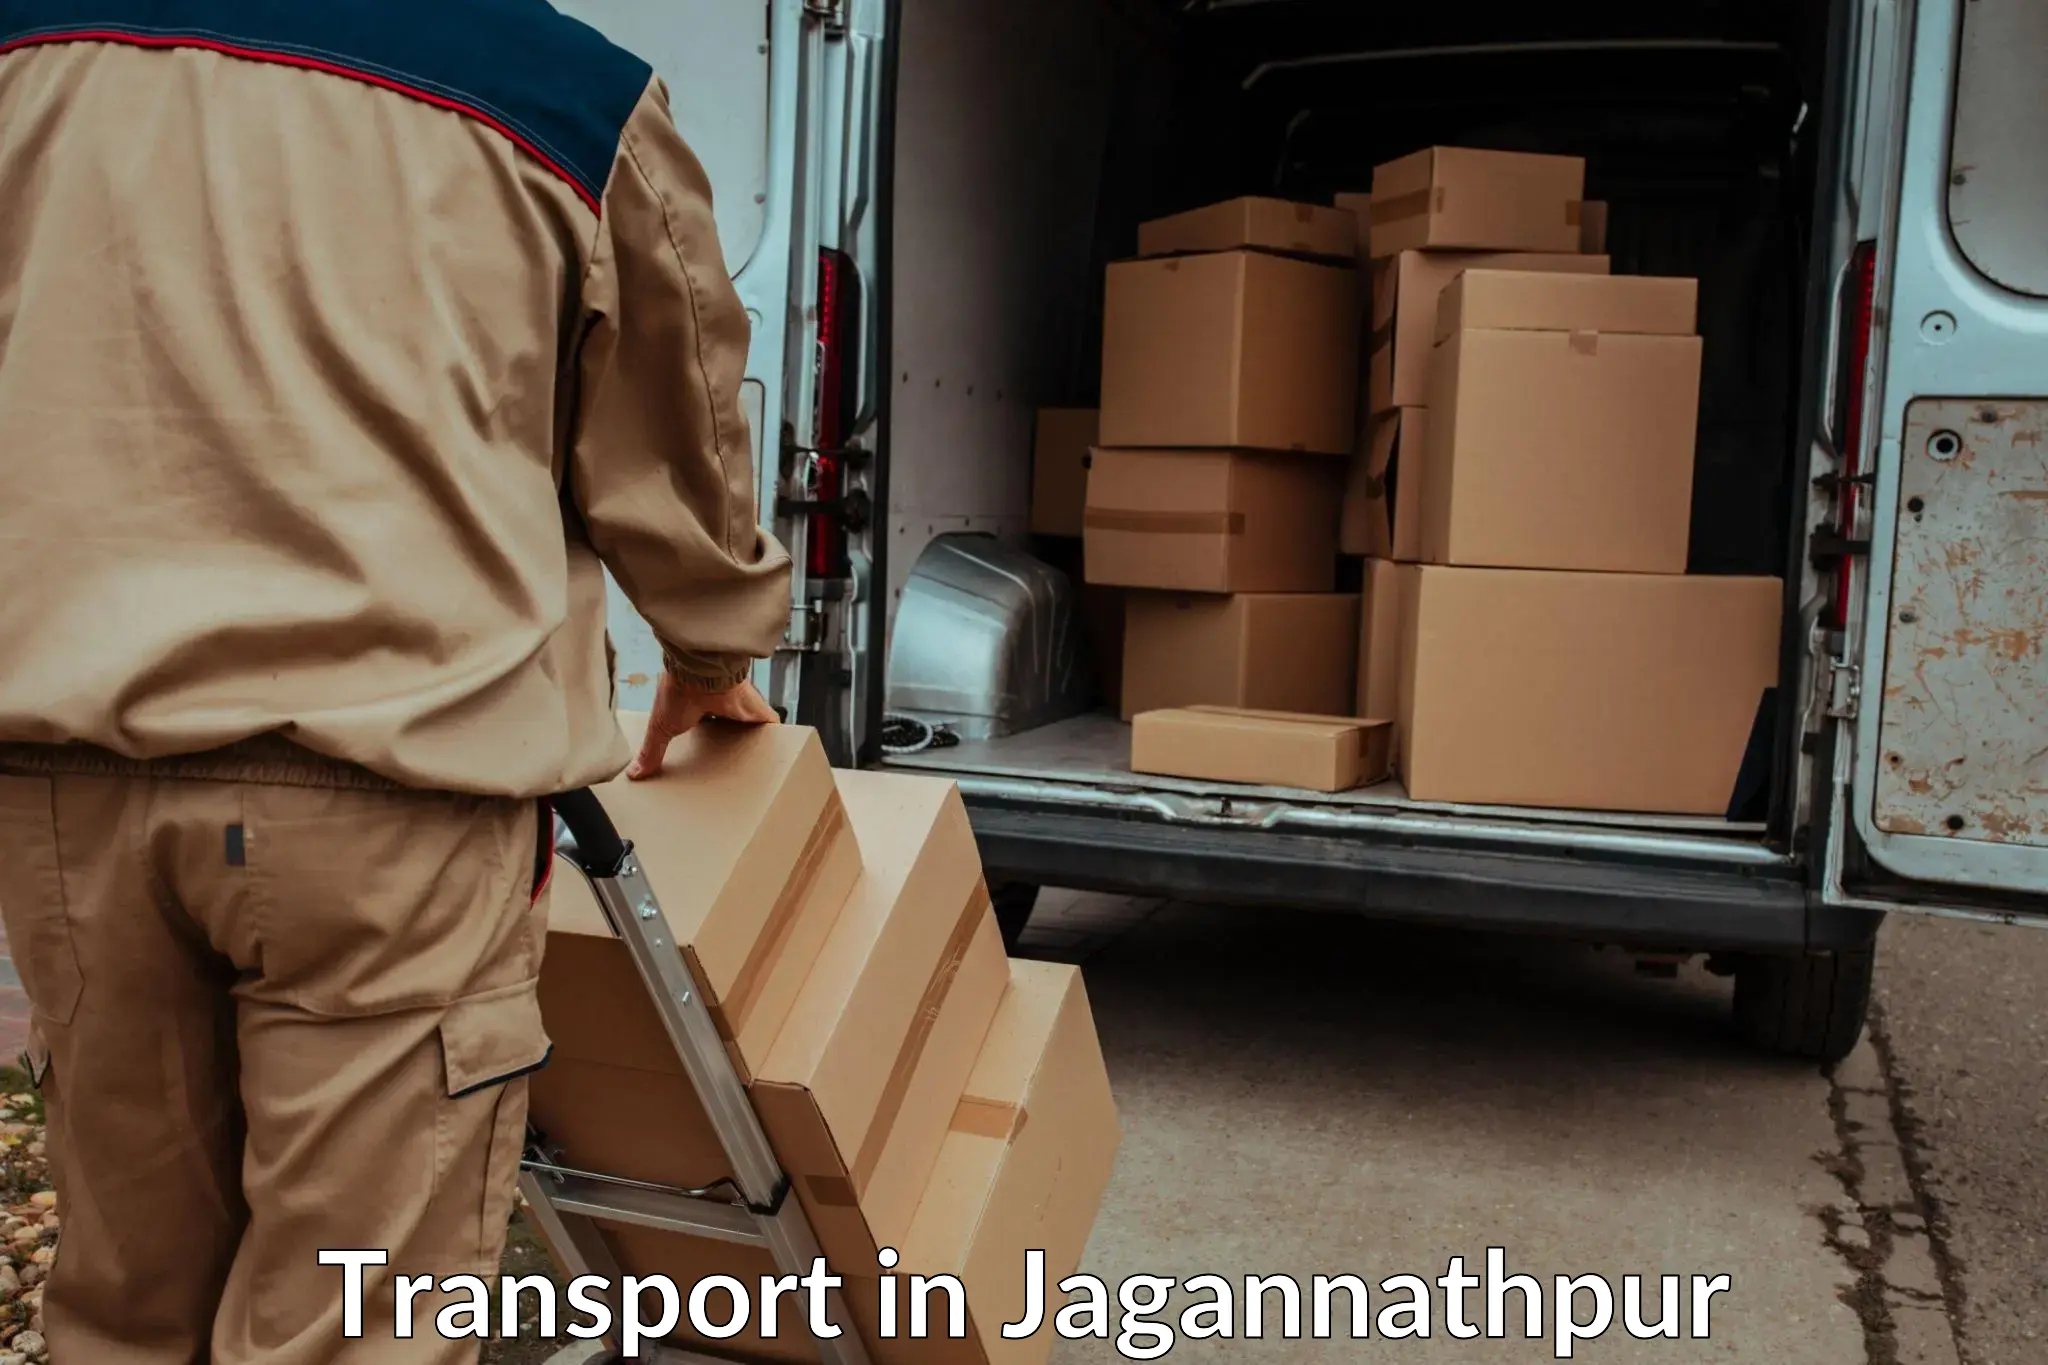 Transportation solution services in Jagannathpur